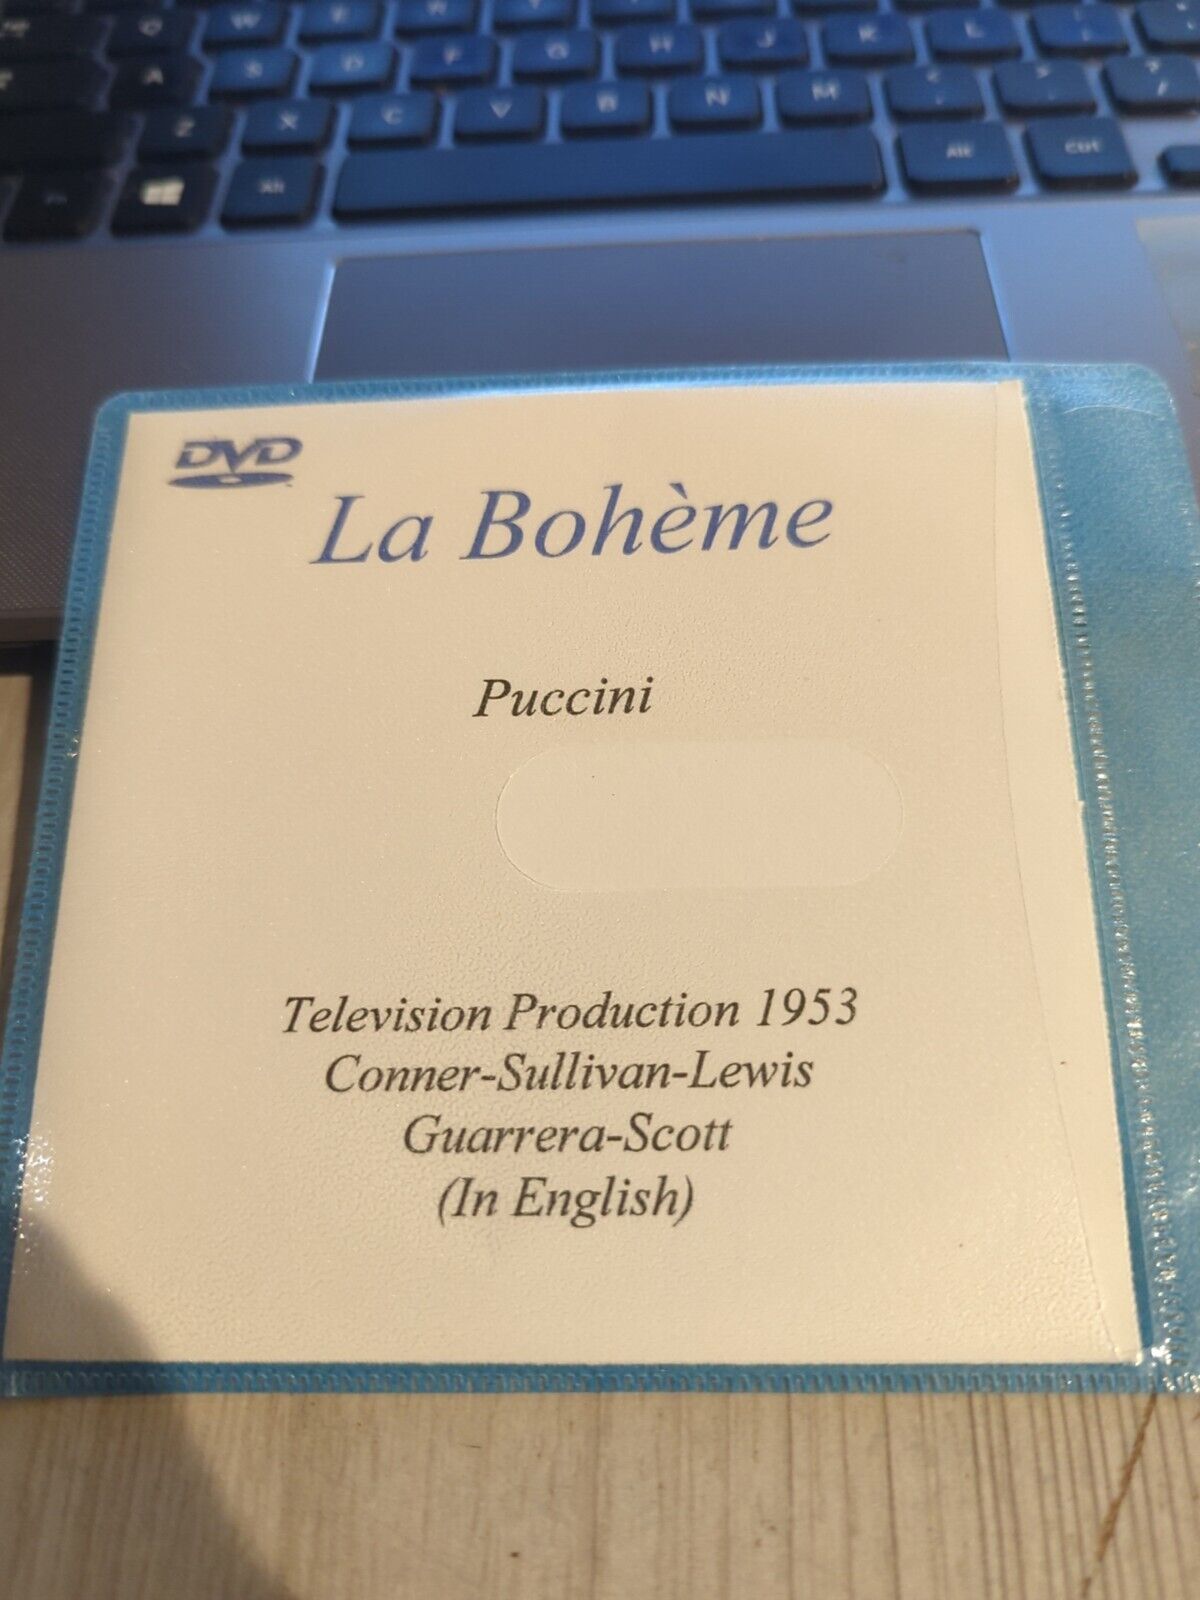 Live Opera DVD 2489 La Boheme Puccini Conner Sullivan Lewis Guarrera Scott 1953